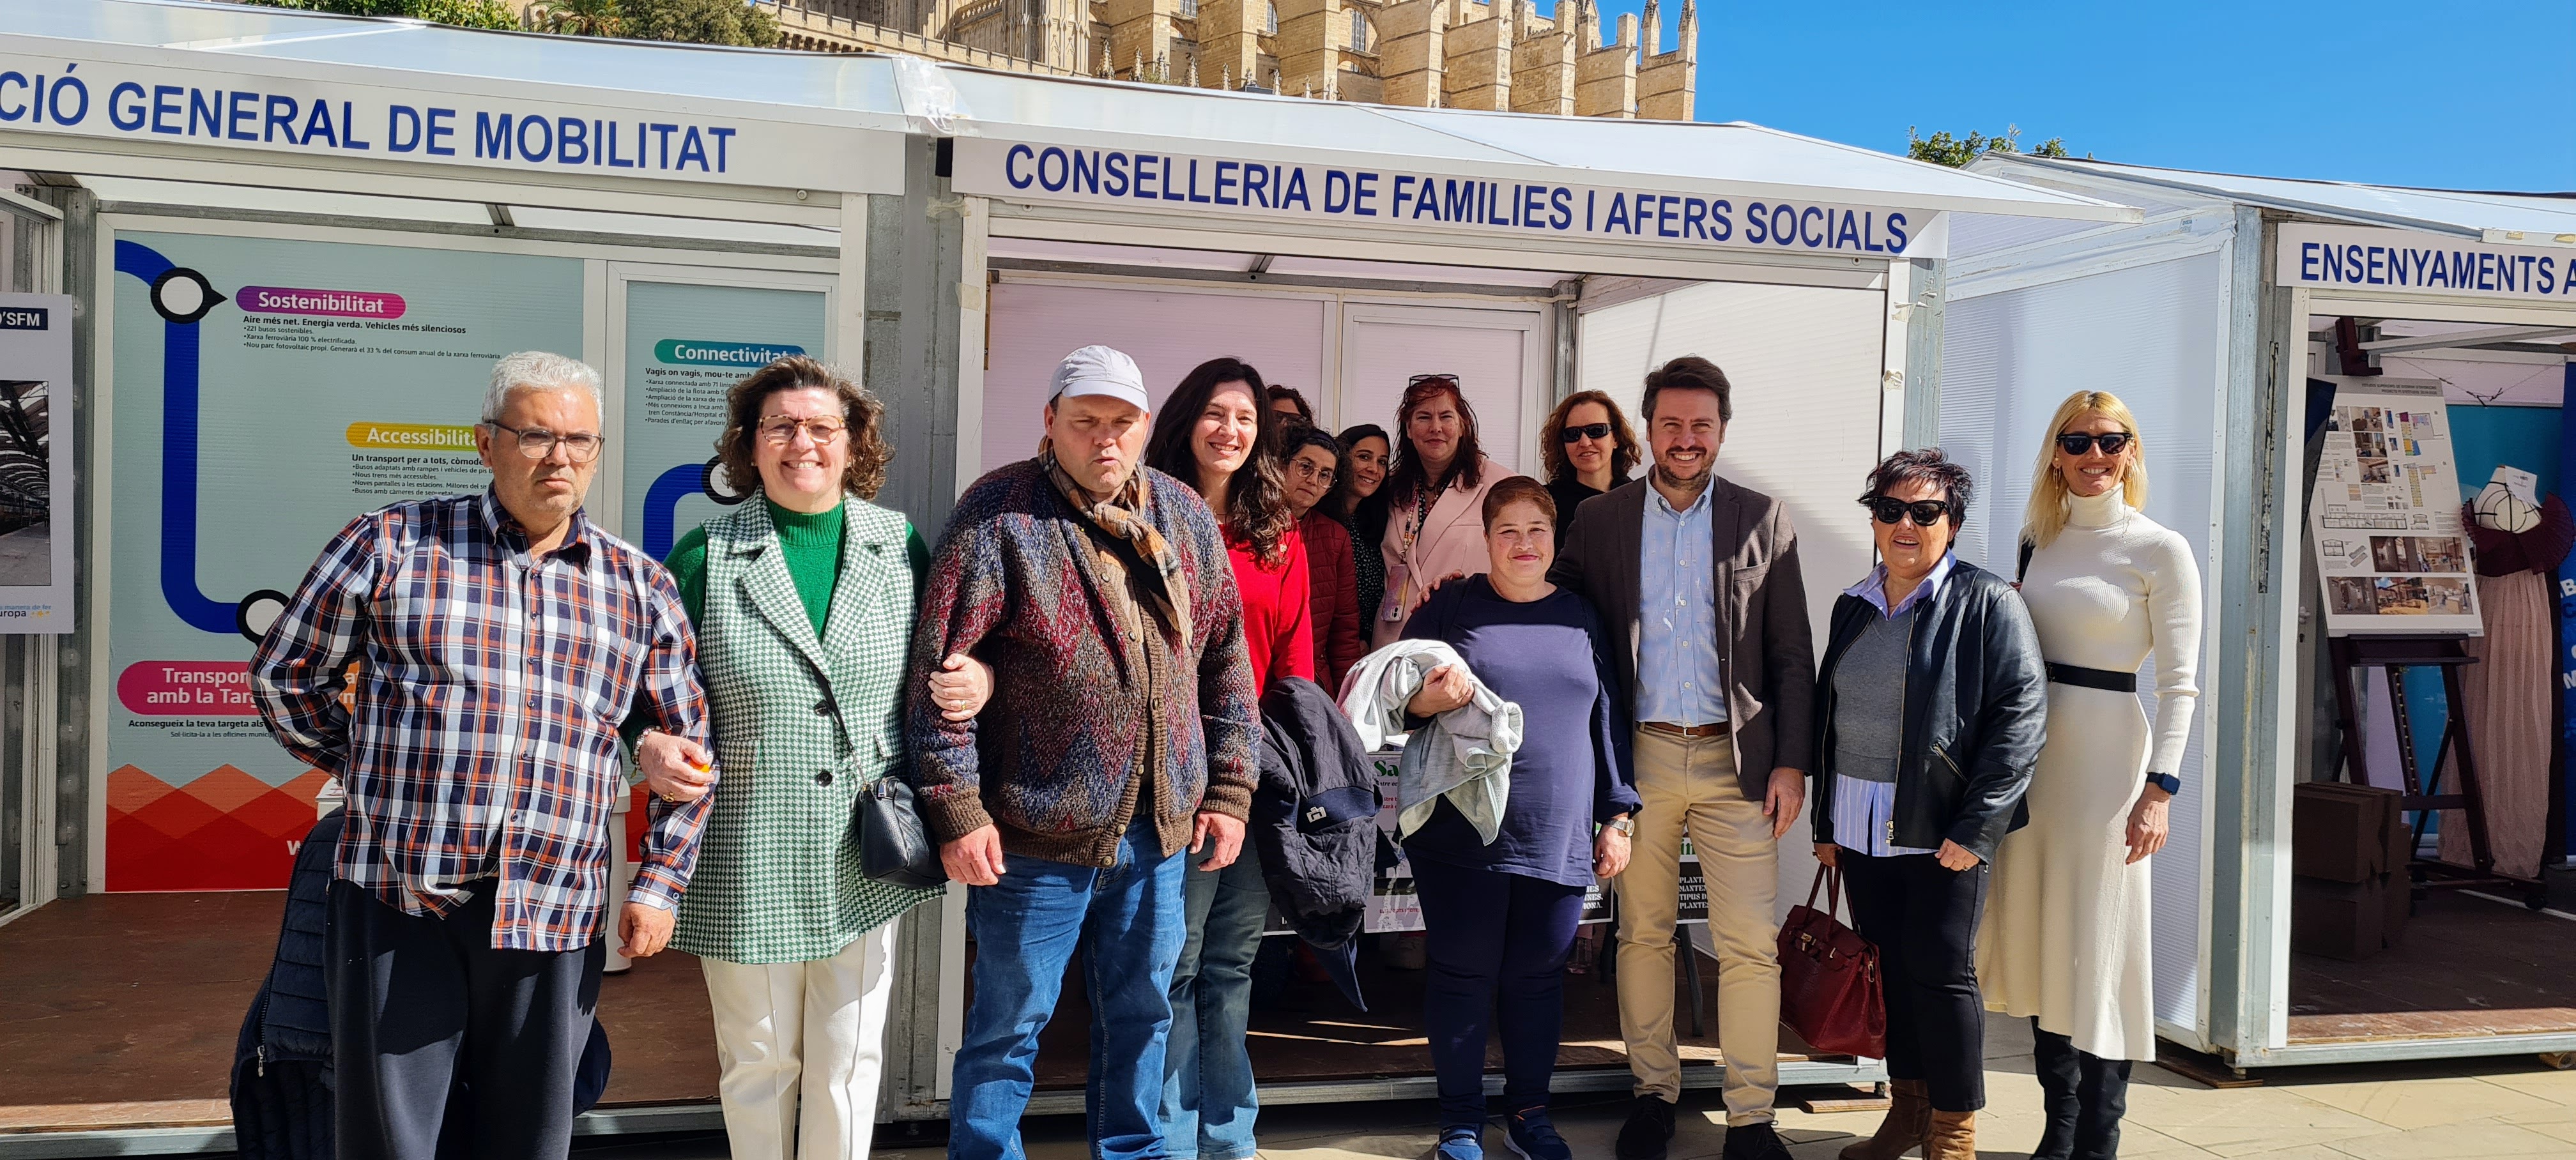 Representants de la Conselleria de Famílies i Afers Socials, avui, amb usuaris del centre ocupacional Sa Riera